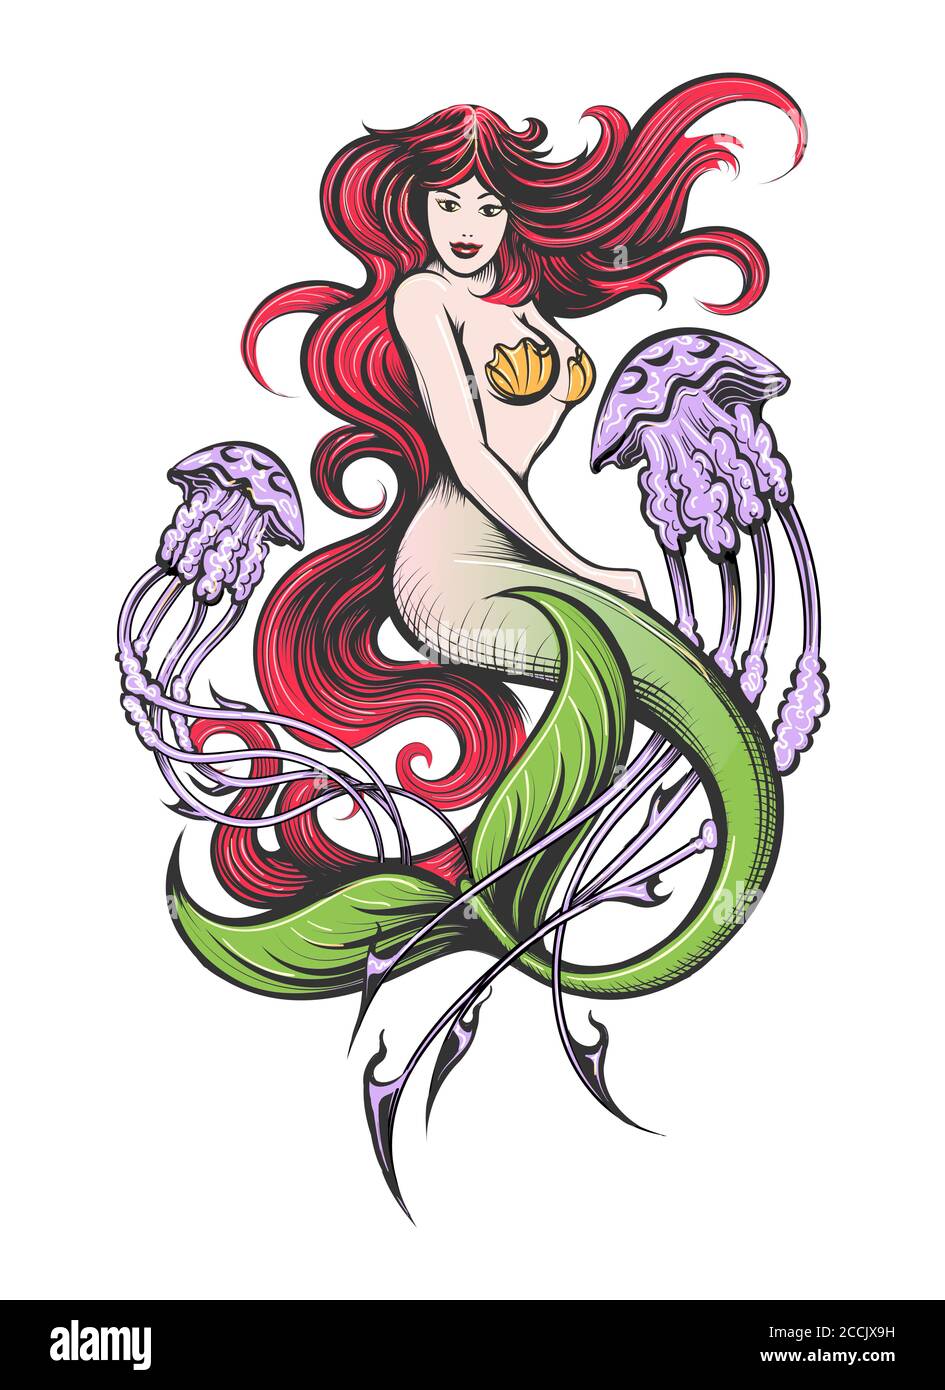 Sirenita con pelo largo rojo con dos medusas moradas Tattoo. Ilustración vectorial. Ilustración del Vector